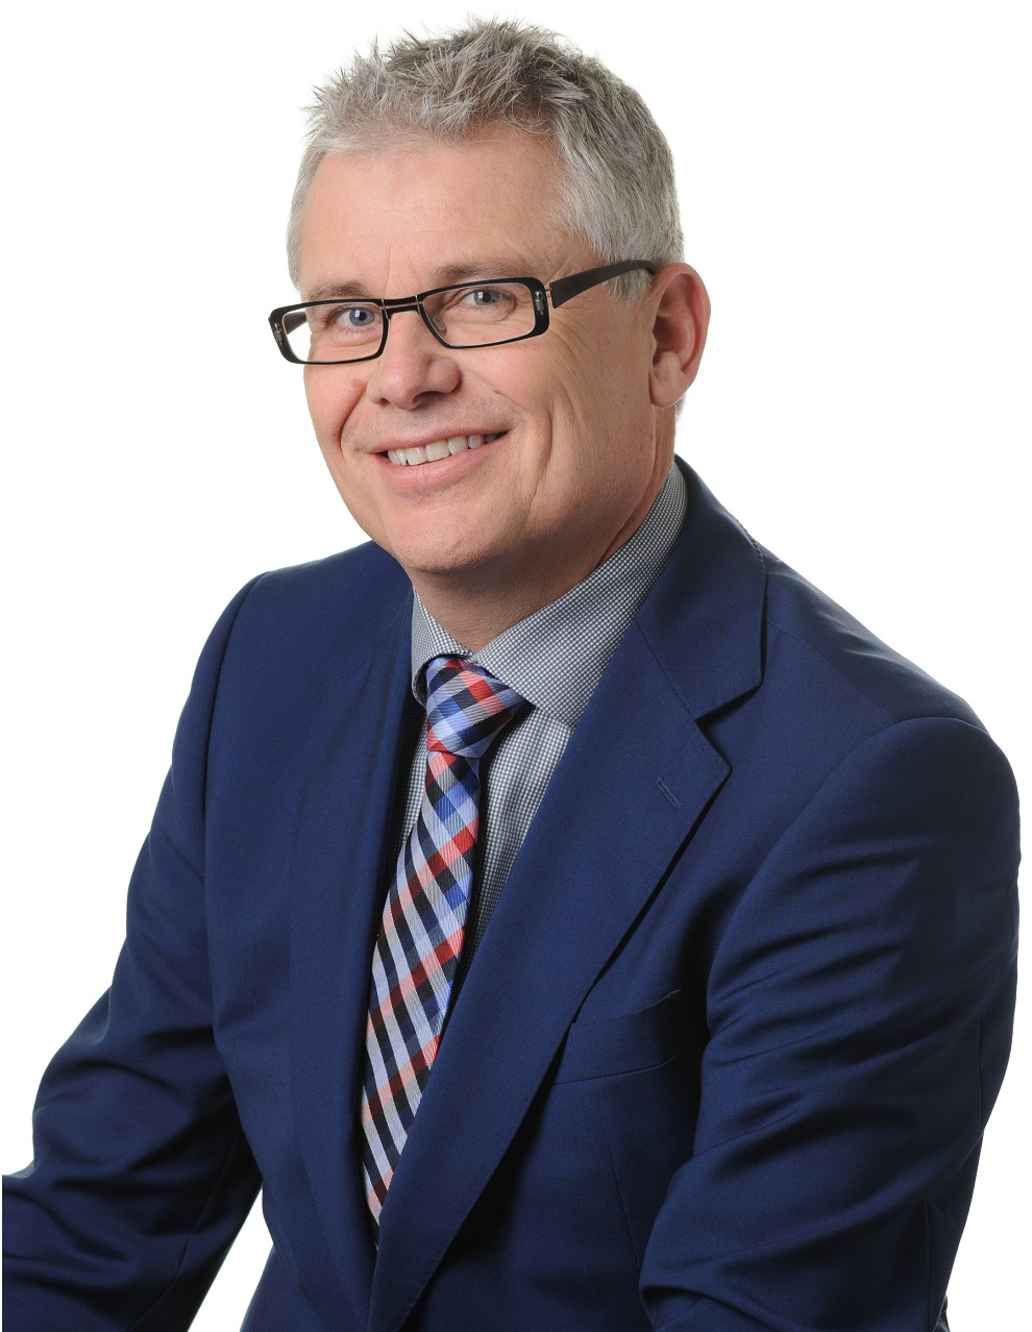 Roy Gosenshuis, senior relatiemanager bij Triodos Bank